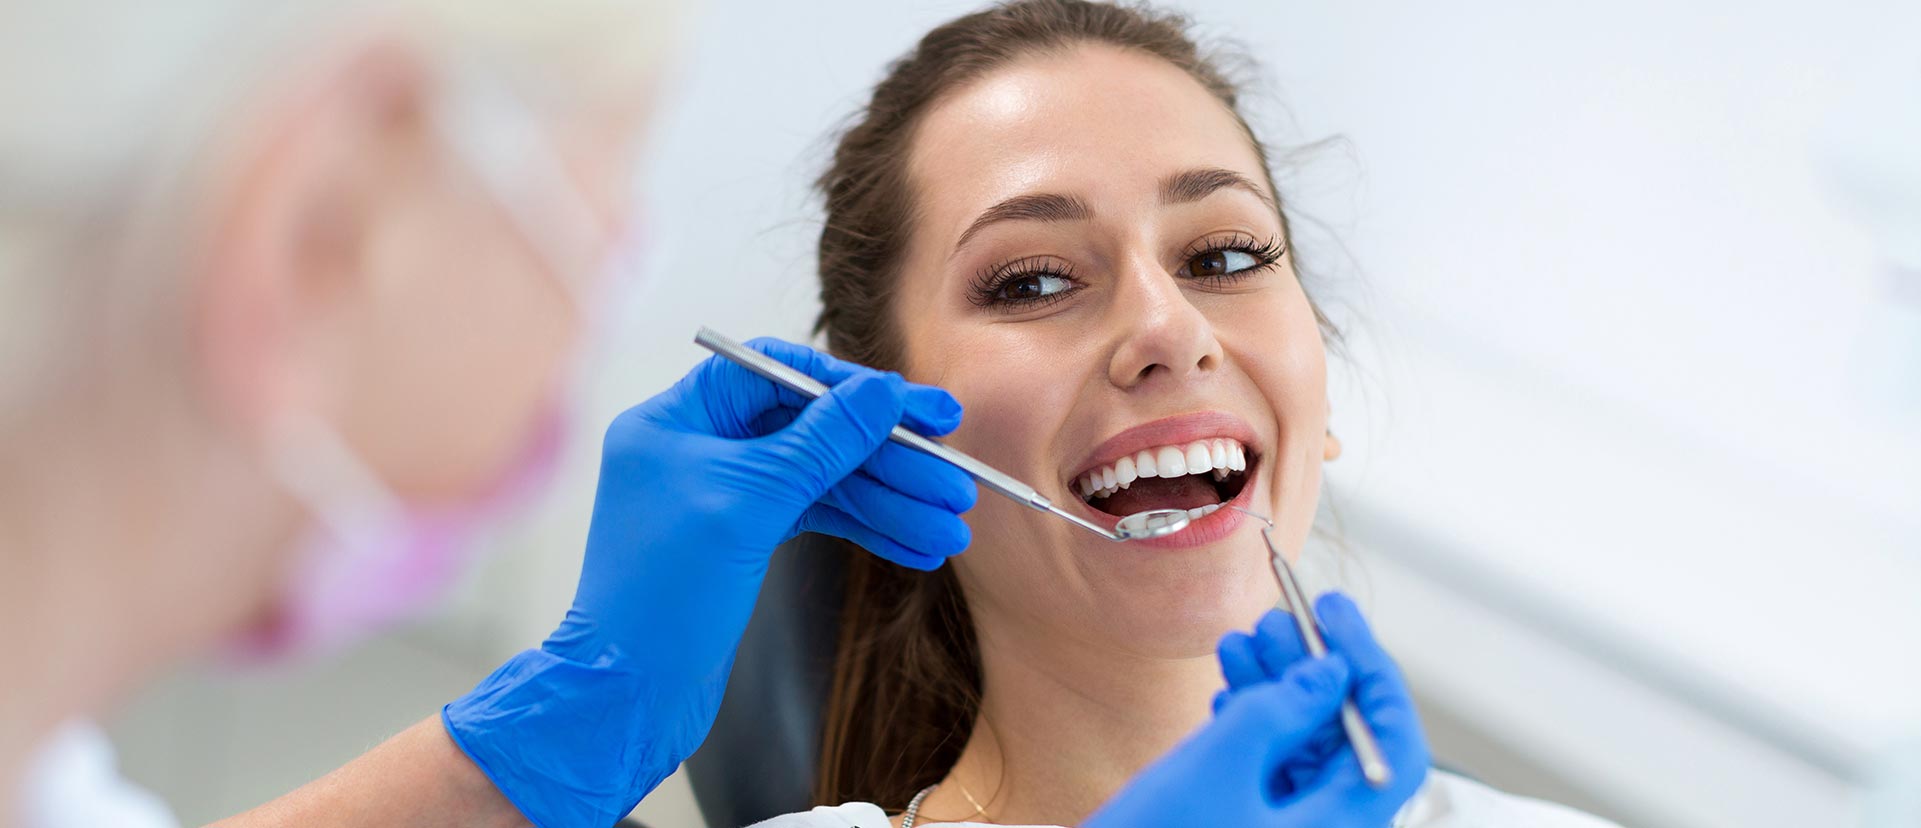 Woman having dental check-up